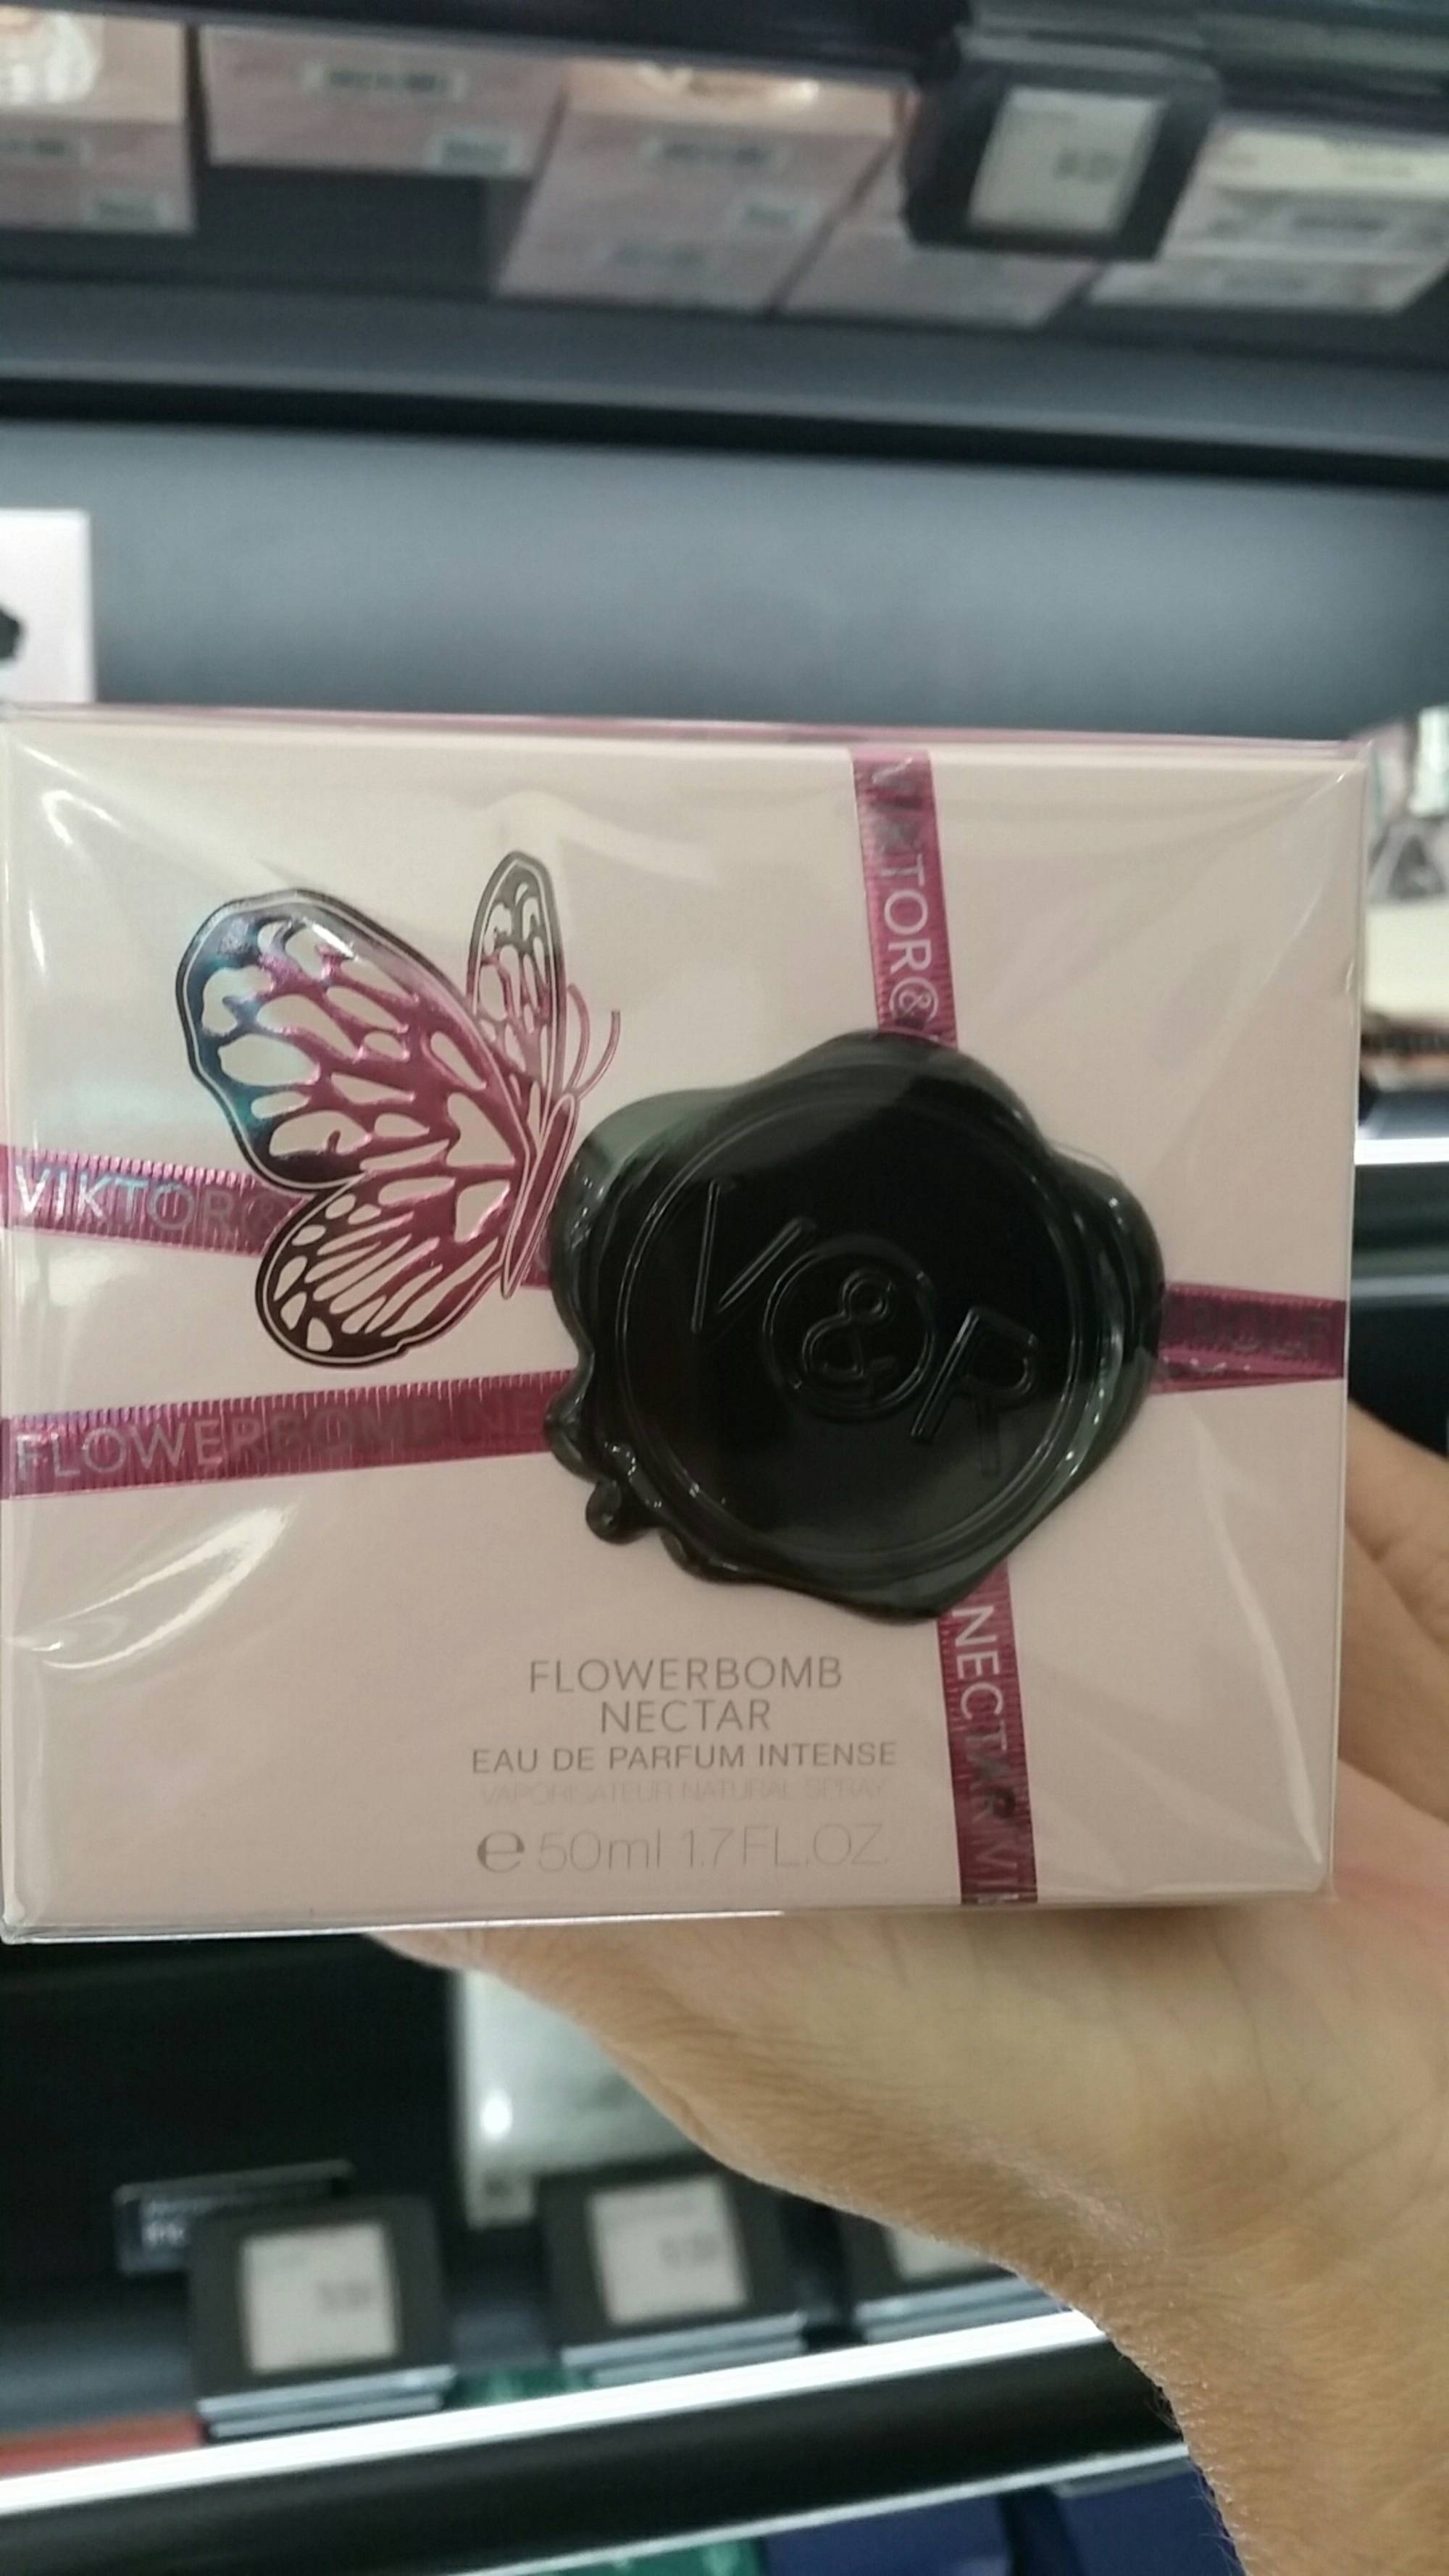 VIKTOR & ROLF - Flowerbomb nectar - Eau de parfum intense